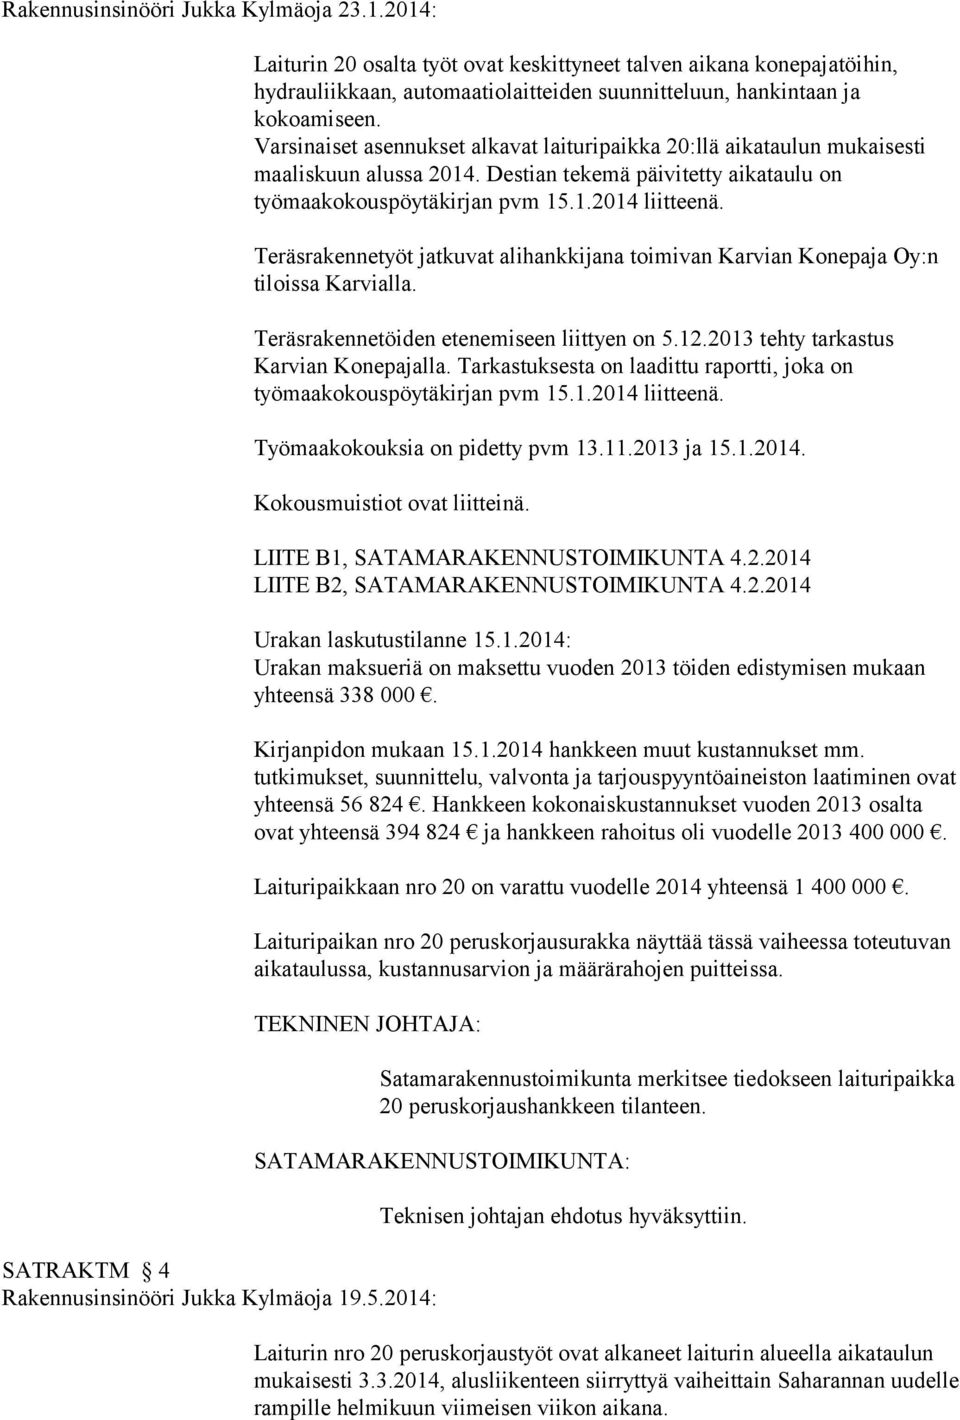 Teräsrakennetyöt jatkuvat alihankkijana toimivan Karvian Konepaja Oy:n tiloissa Karvialla. Teräsrakennetöiden etenemiseen liittyen on 5.12.2013 tehty tarkastus Karvian Konepajalla.